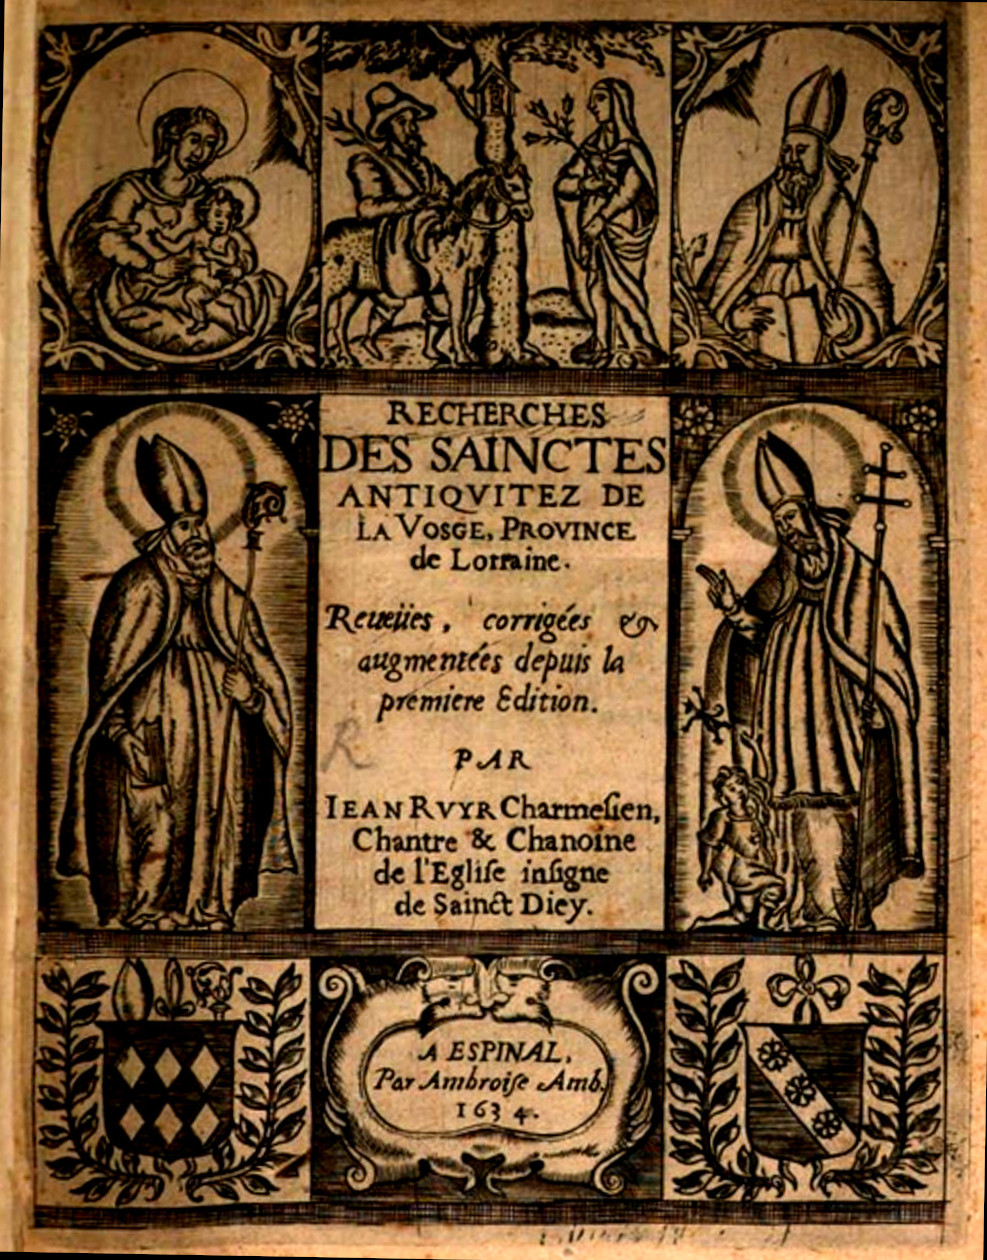 La page de garde de l'édition de 1634 de <i>Recherches des sainctes antiquitez de la Vosge</i> dûe à Amb. Ambroise.<br>
		À gauche saint Dieudonné (Déodat),<br>à droite saint Hydulphe, continuateur symbolique de Déodat.